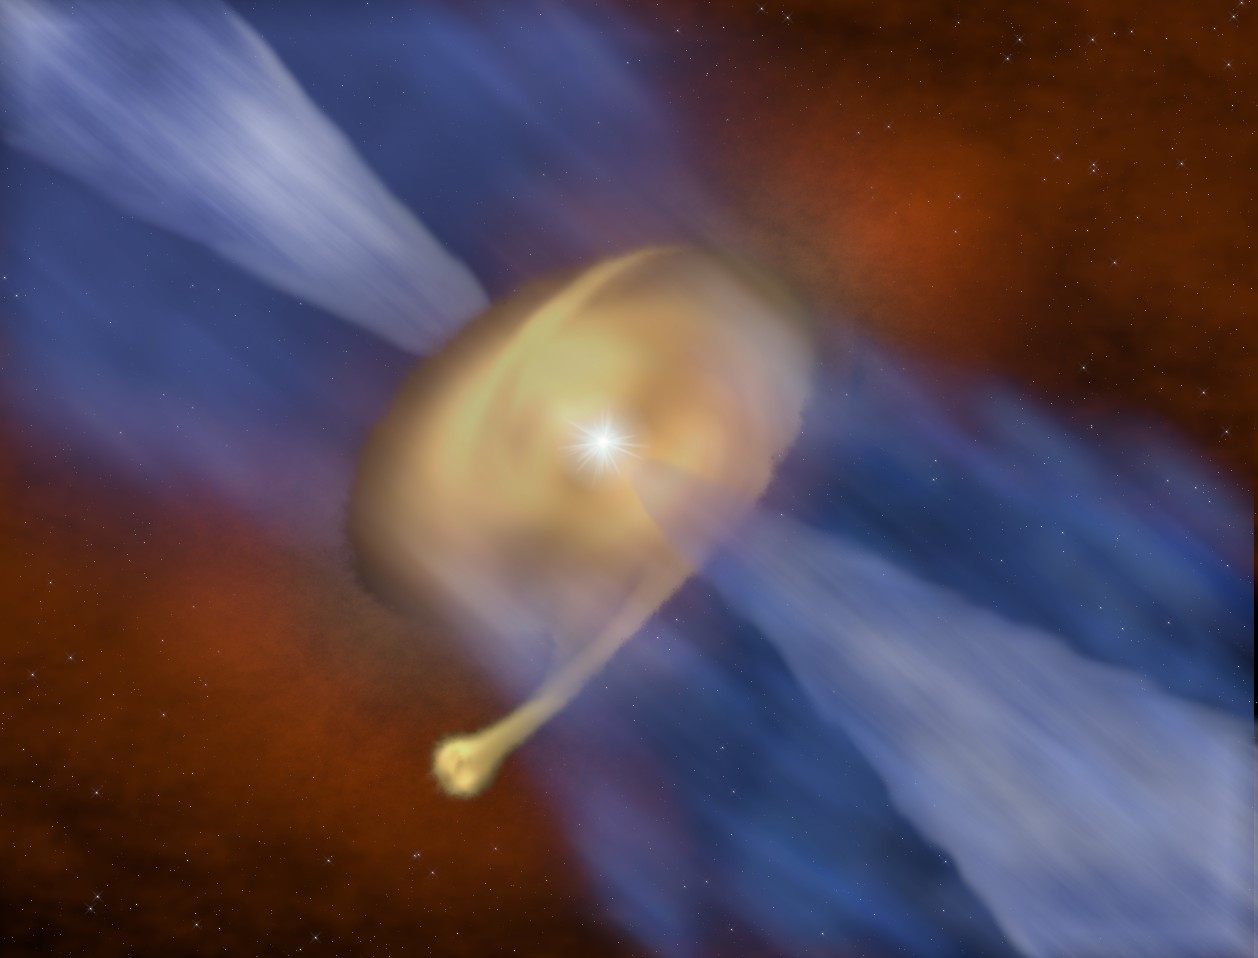 <p>Representación artística del disco de polvo y gas que rodea la protoestrella masiva MM 1a, con su compañera MM 1b formándose en la zona exterior. Créditos: J. D. Ilee / Universidad de Leeds.</p>
